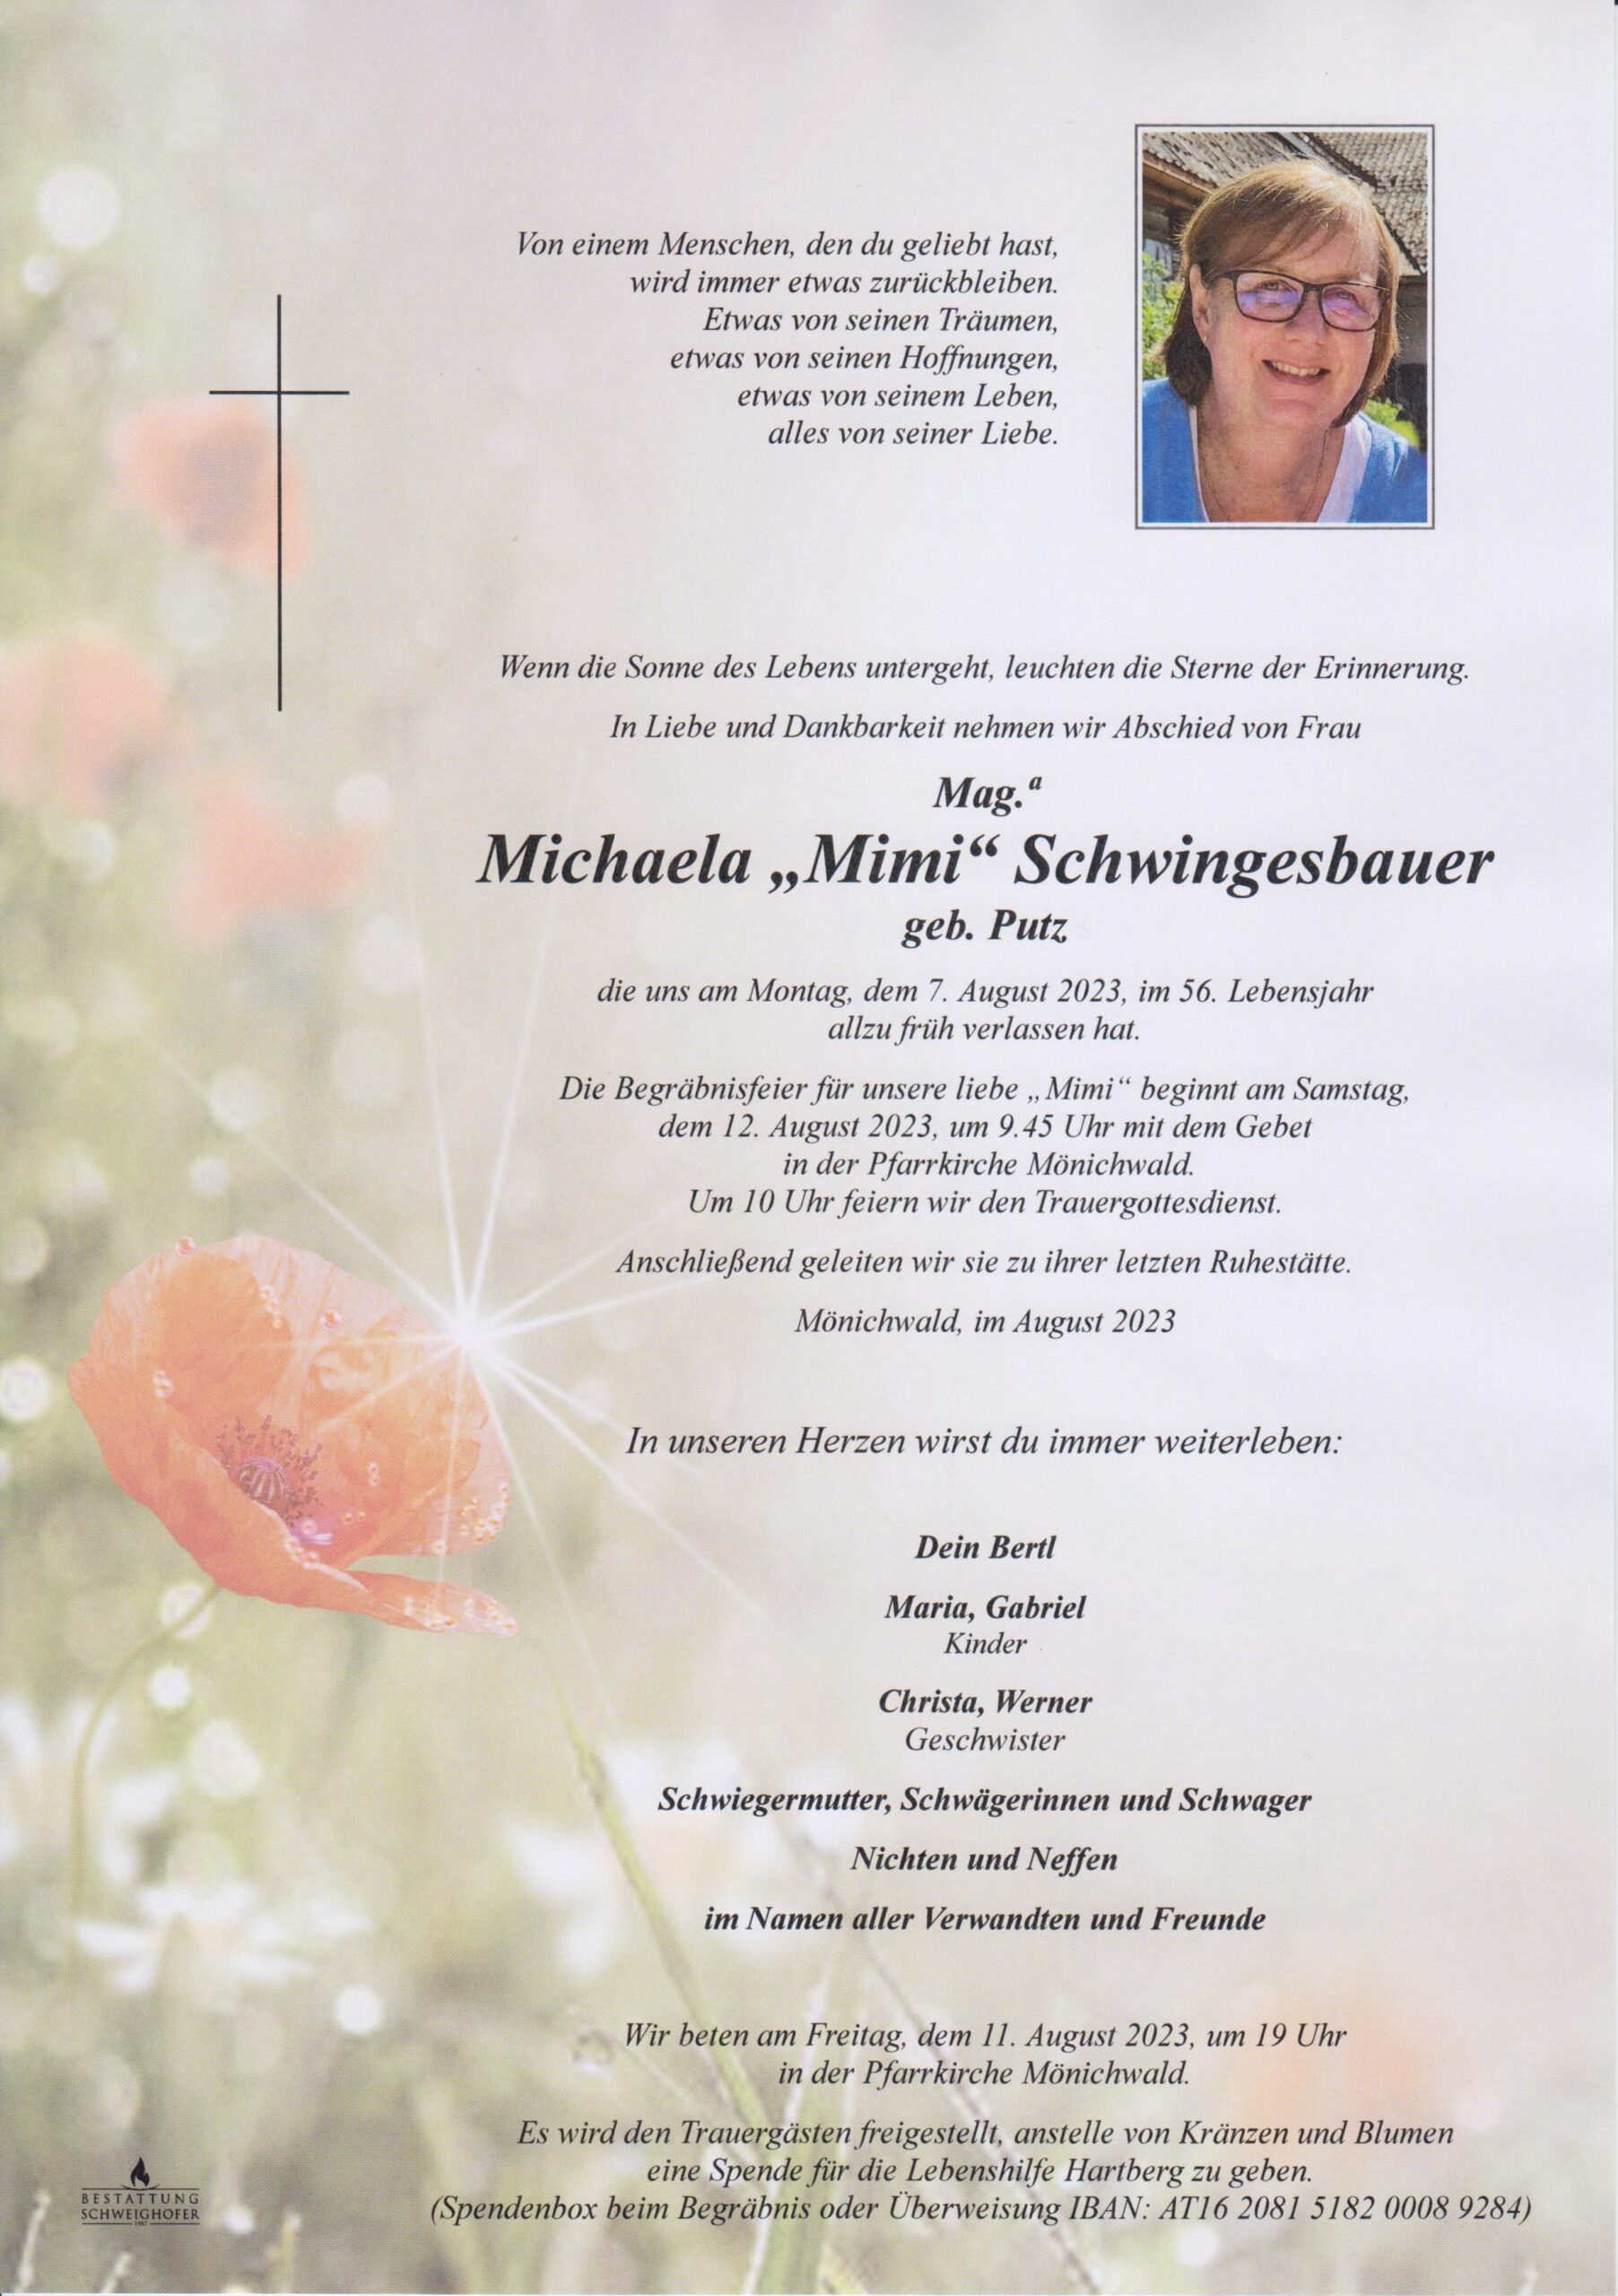 Michaela Schwingesbauer